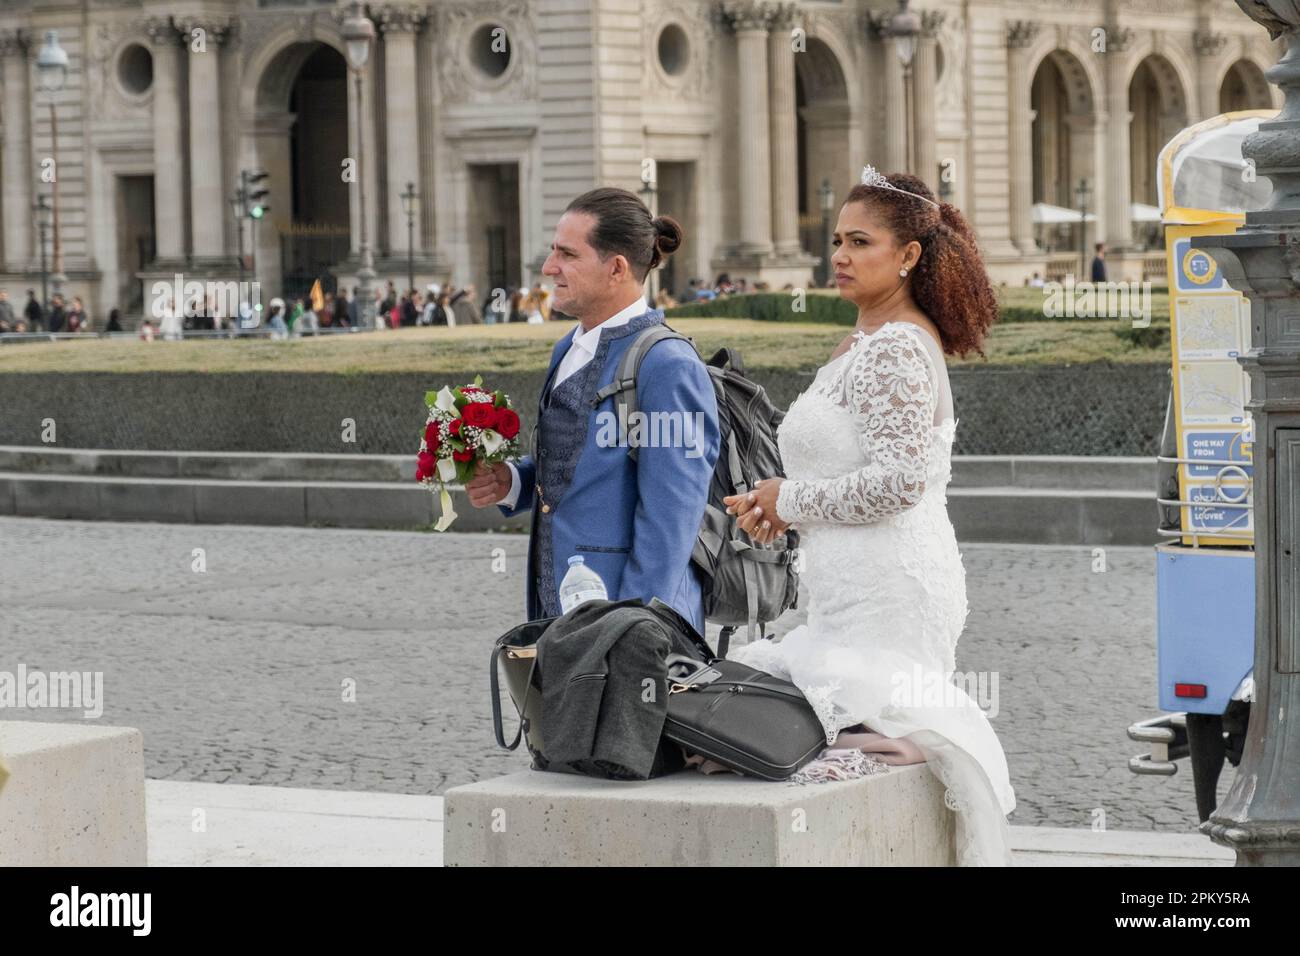 Célébrer l'amour dans la ville romantique : un beau couple qui embrasse leur Journée spéciale à Paris Banque D'Images